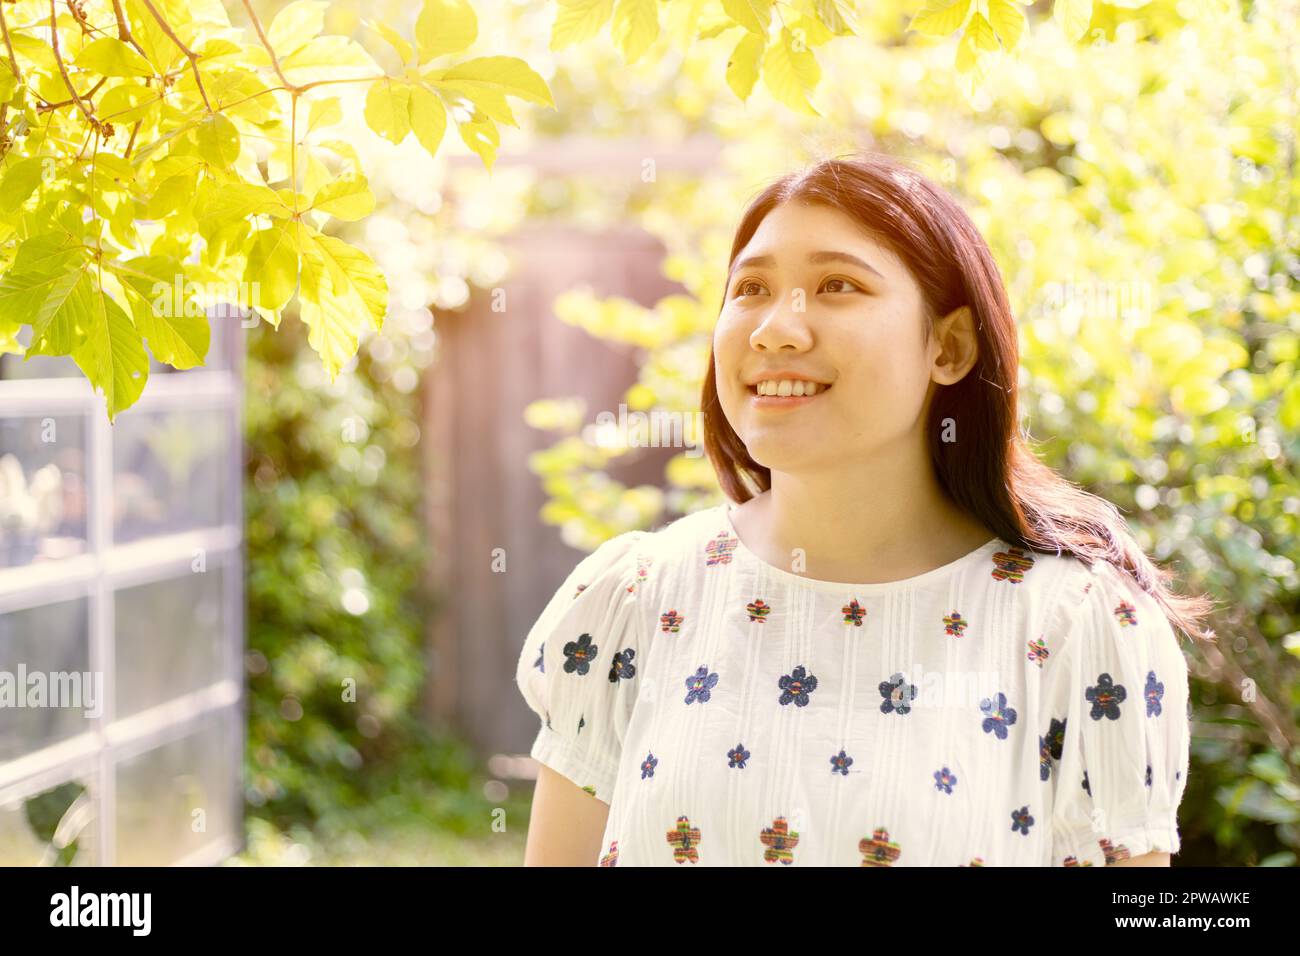 Glückliche Frau junger Teenager, der im Garten lächelt, mit grünem Baum, frischer Umgebung, Luftökologie im Garten Stockfoto